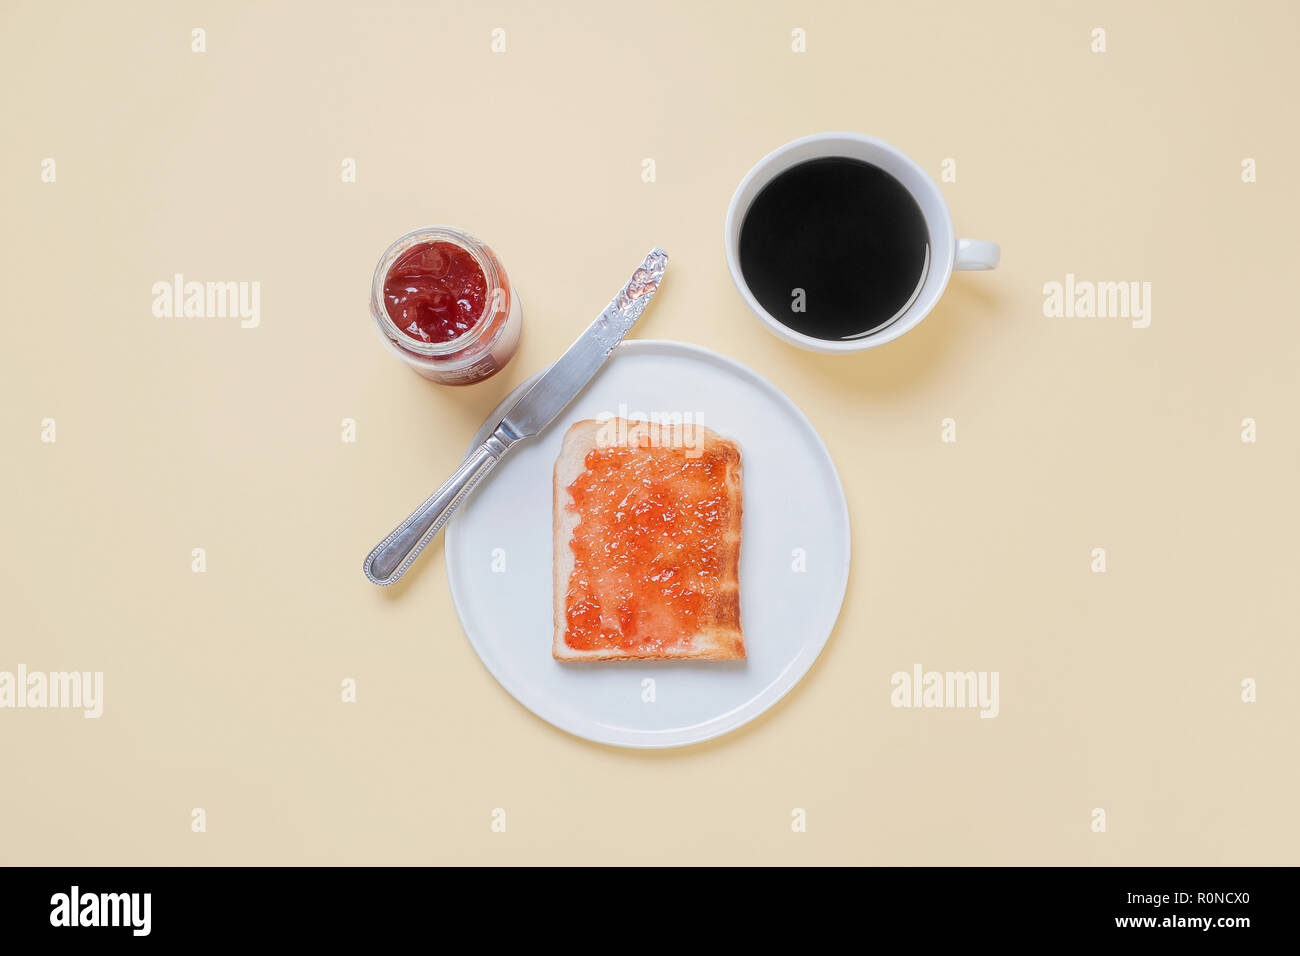 Vista superiore del toast con marmellata di fragole confettura su una piastra bianca con la lama di un coltello, caffè e un vasetto di conserva su un vintage tan sfondo con spazio di copia Foto Stock